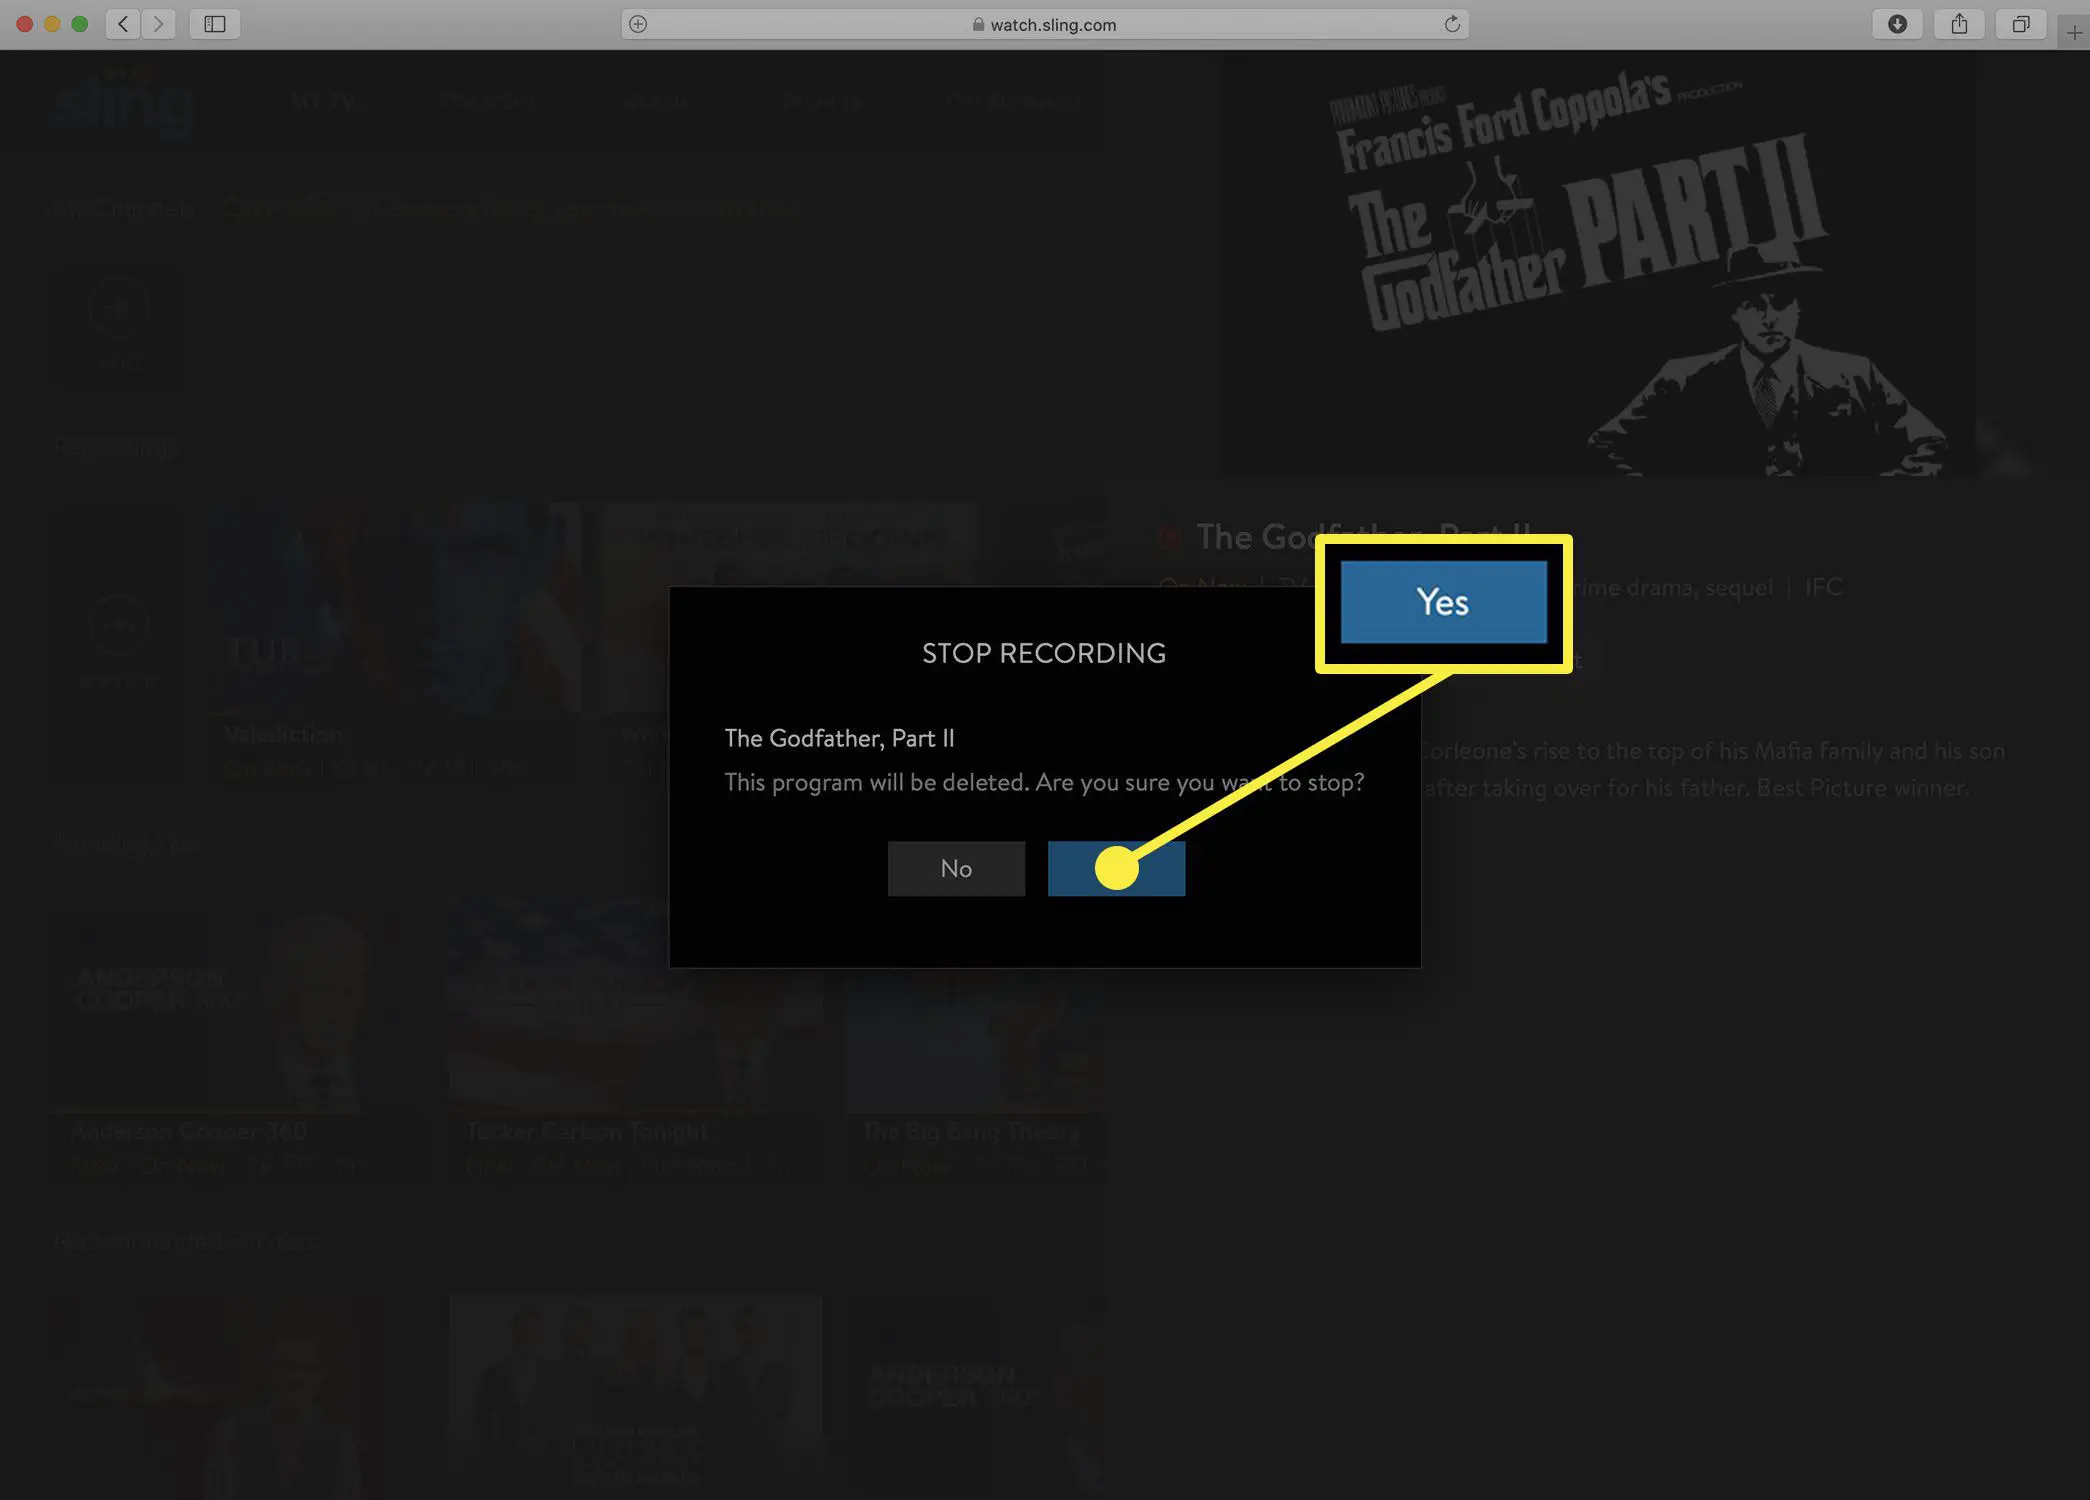 Captura de tela da mensagem de confirmação da Sling TV ao interromper uma gravação de DVR.